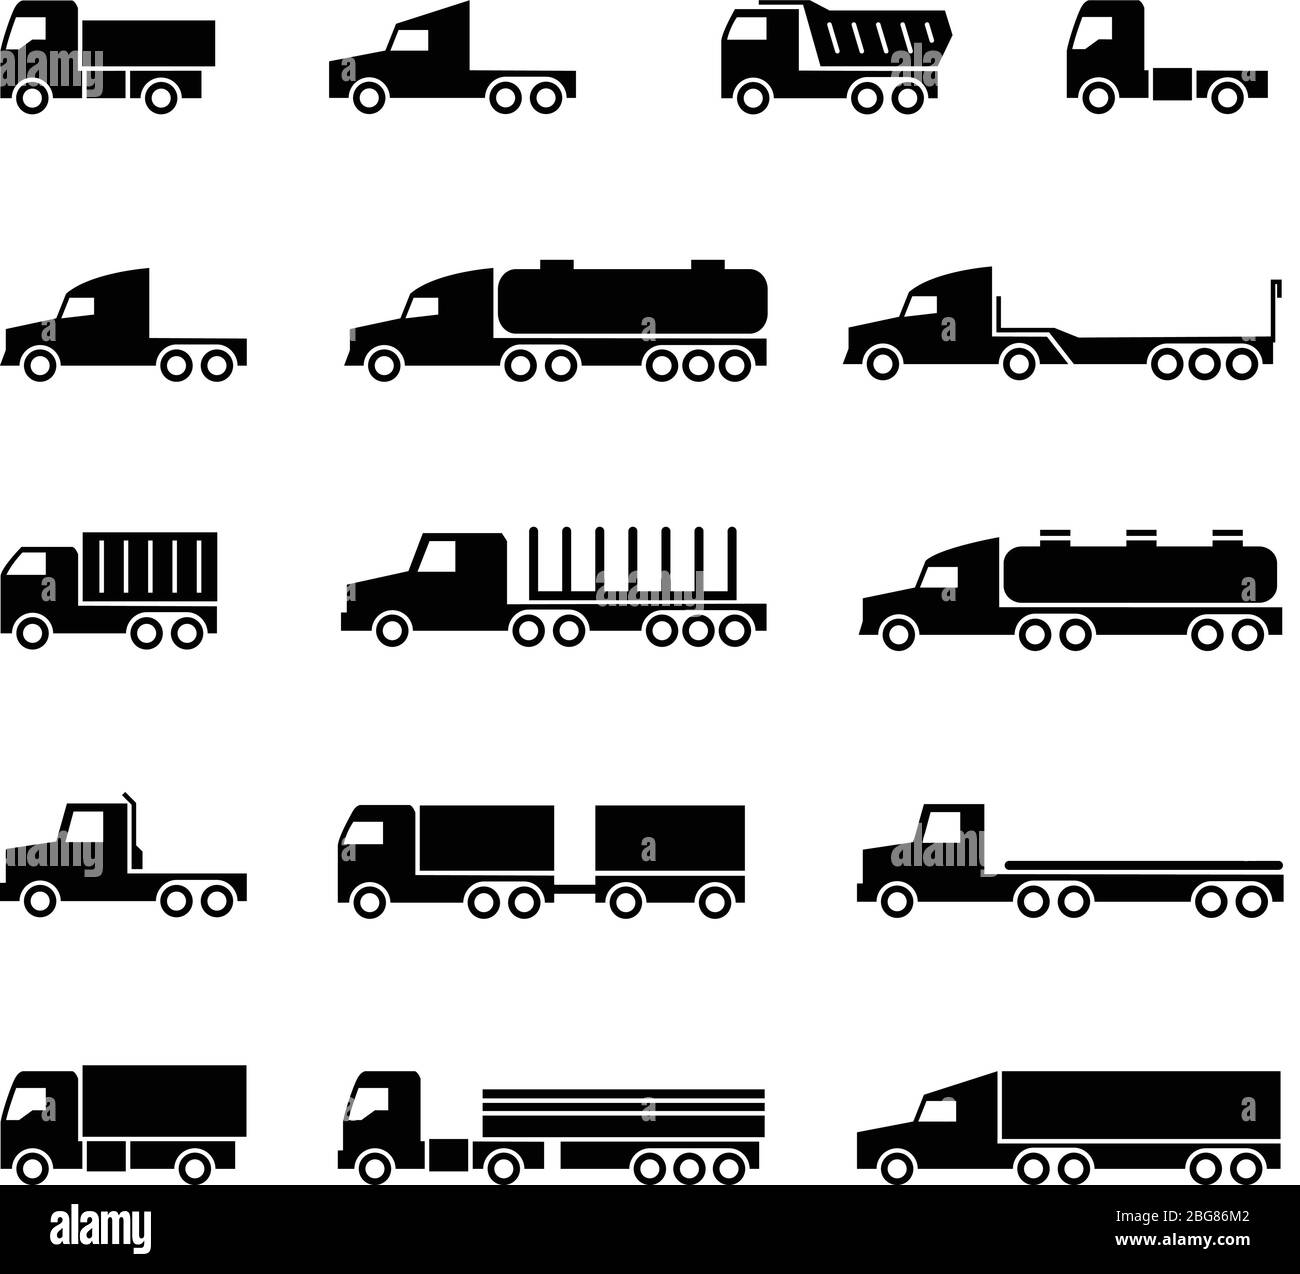 Symbole für die Fahrzeugsilhouette. Versand, Frachttruks, Müllcontainer und Transporter. Symbole für Transportvektoren. Transport Anhänger, LKW, LKW-Illustration Stock Vektor